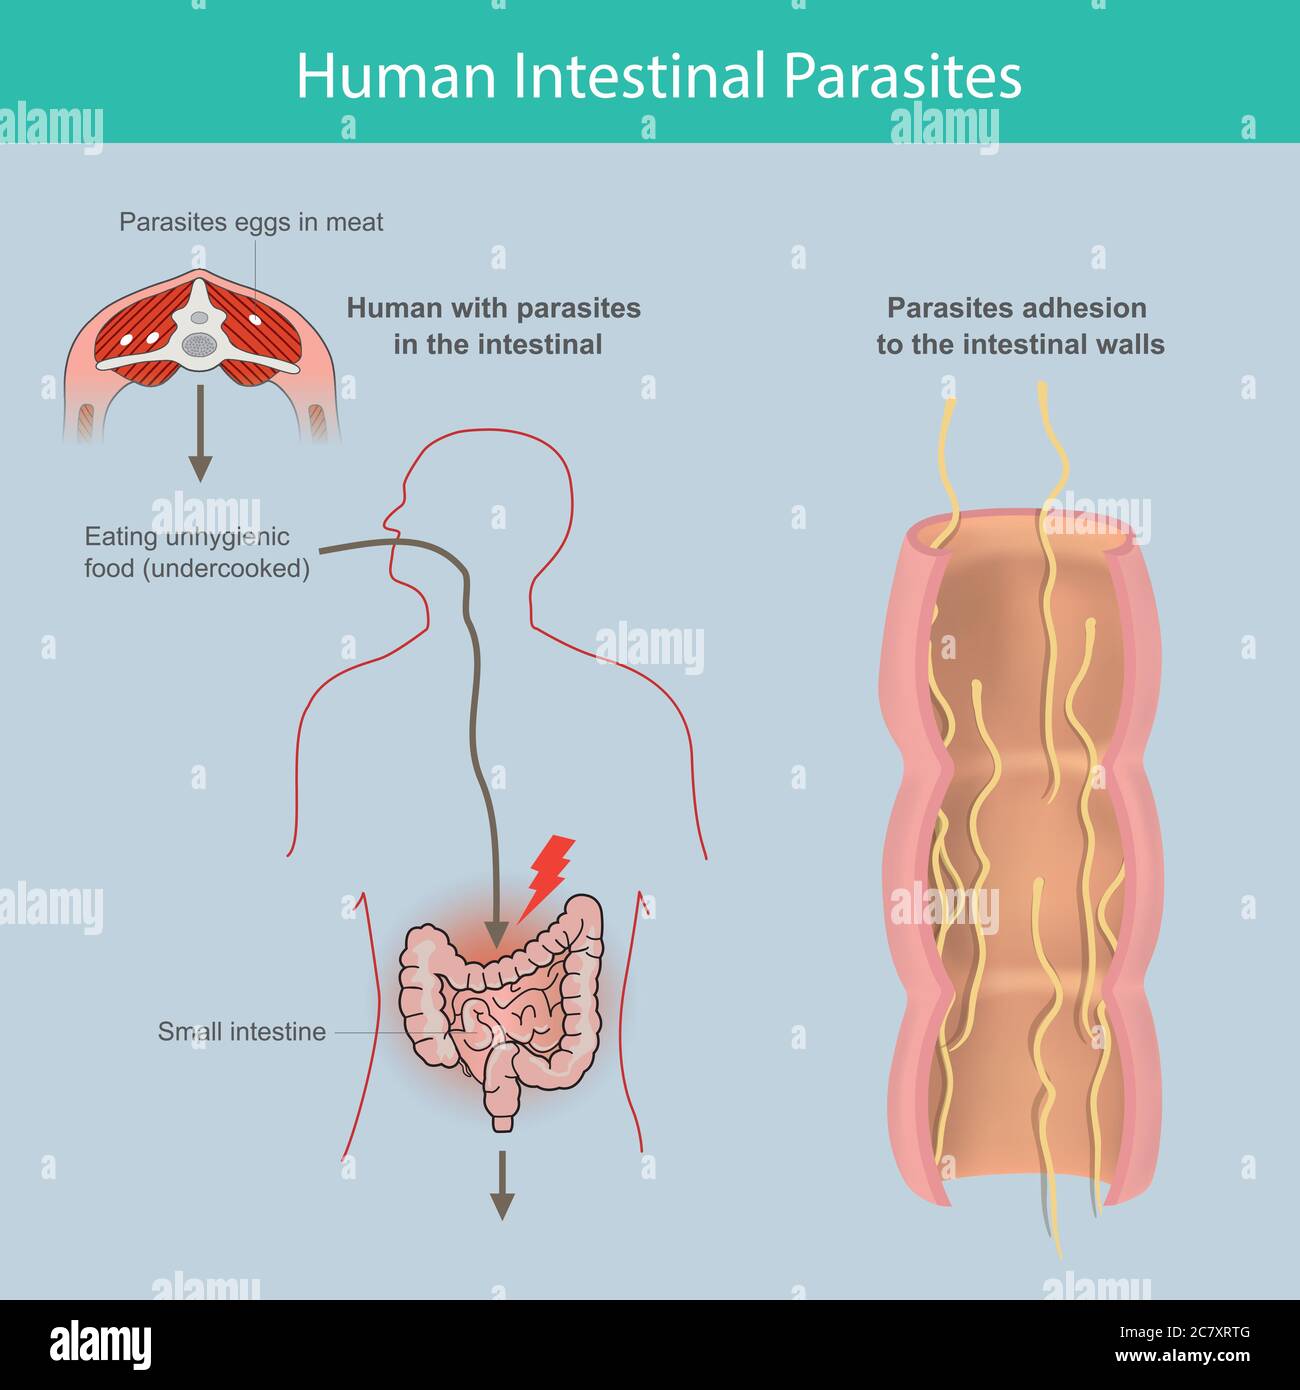 Parasites intestinaux humains. Illustration expliquer les parasites dans l'intestin grêle humain de la cause de manger de la viande infectée ou parasites oeufs dans la viande Illustration de Vecteur